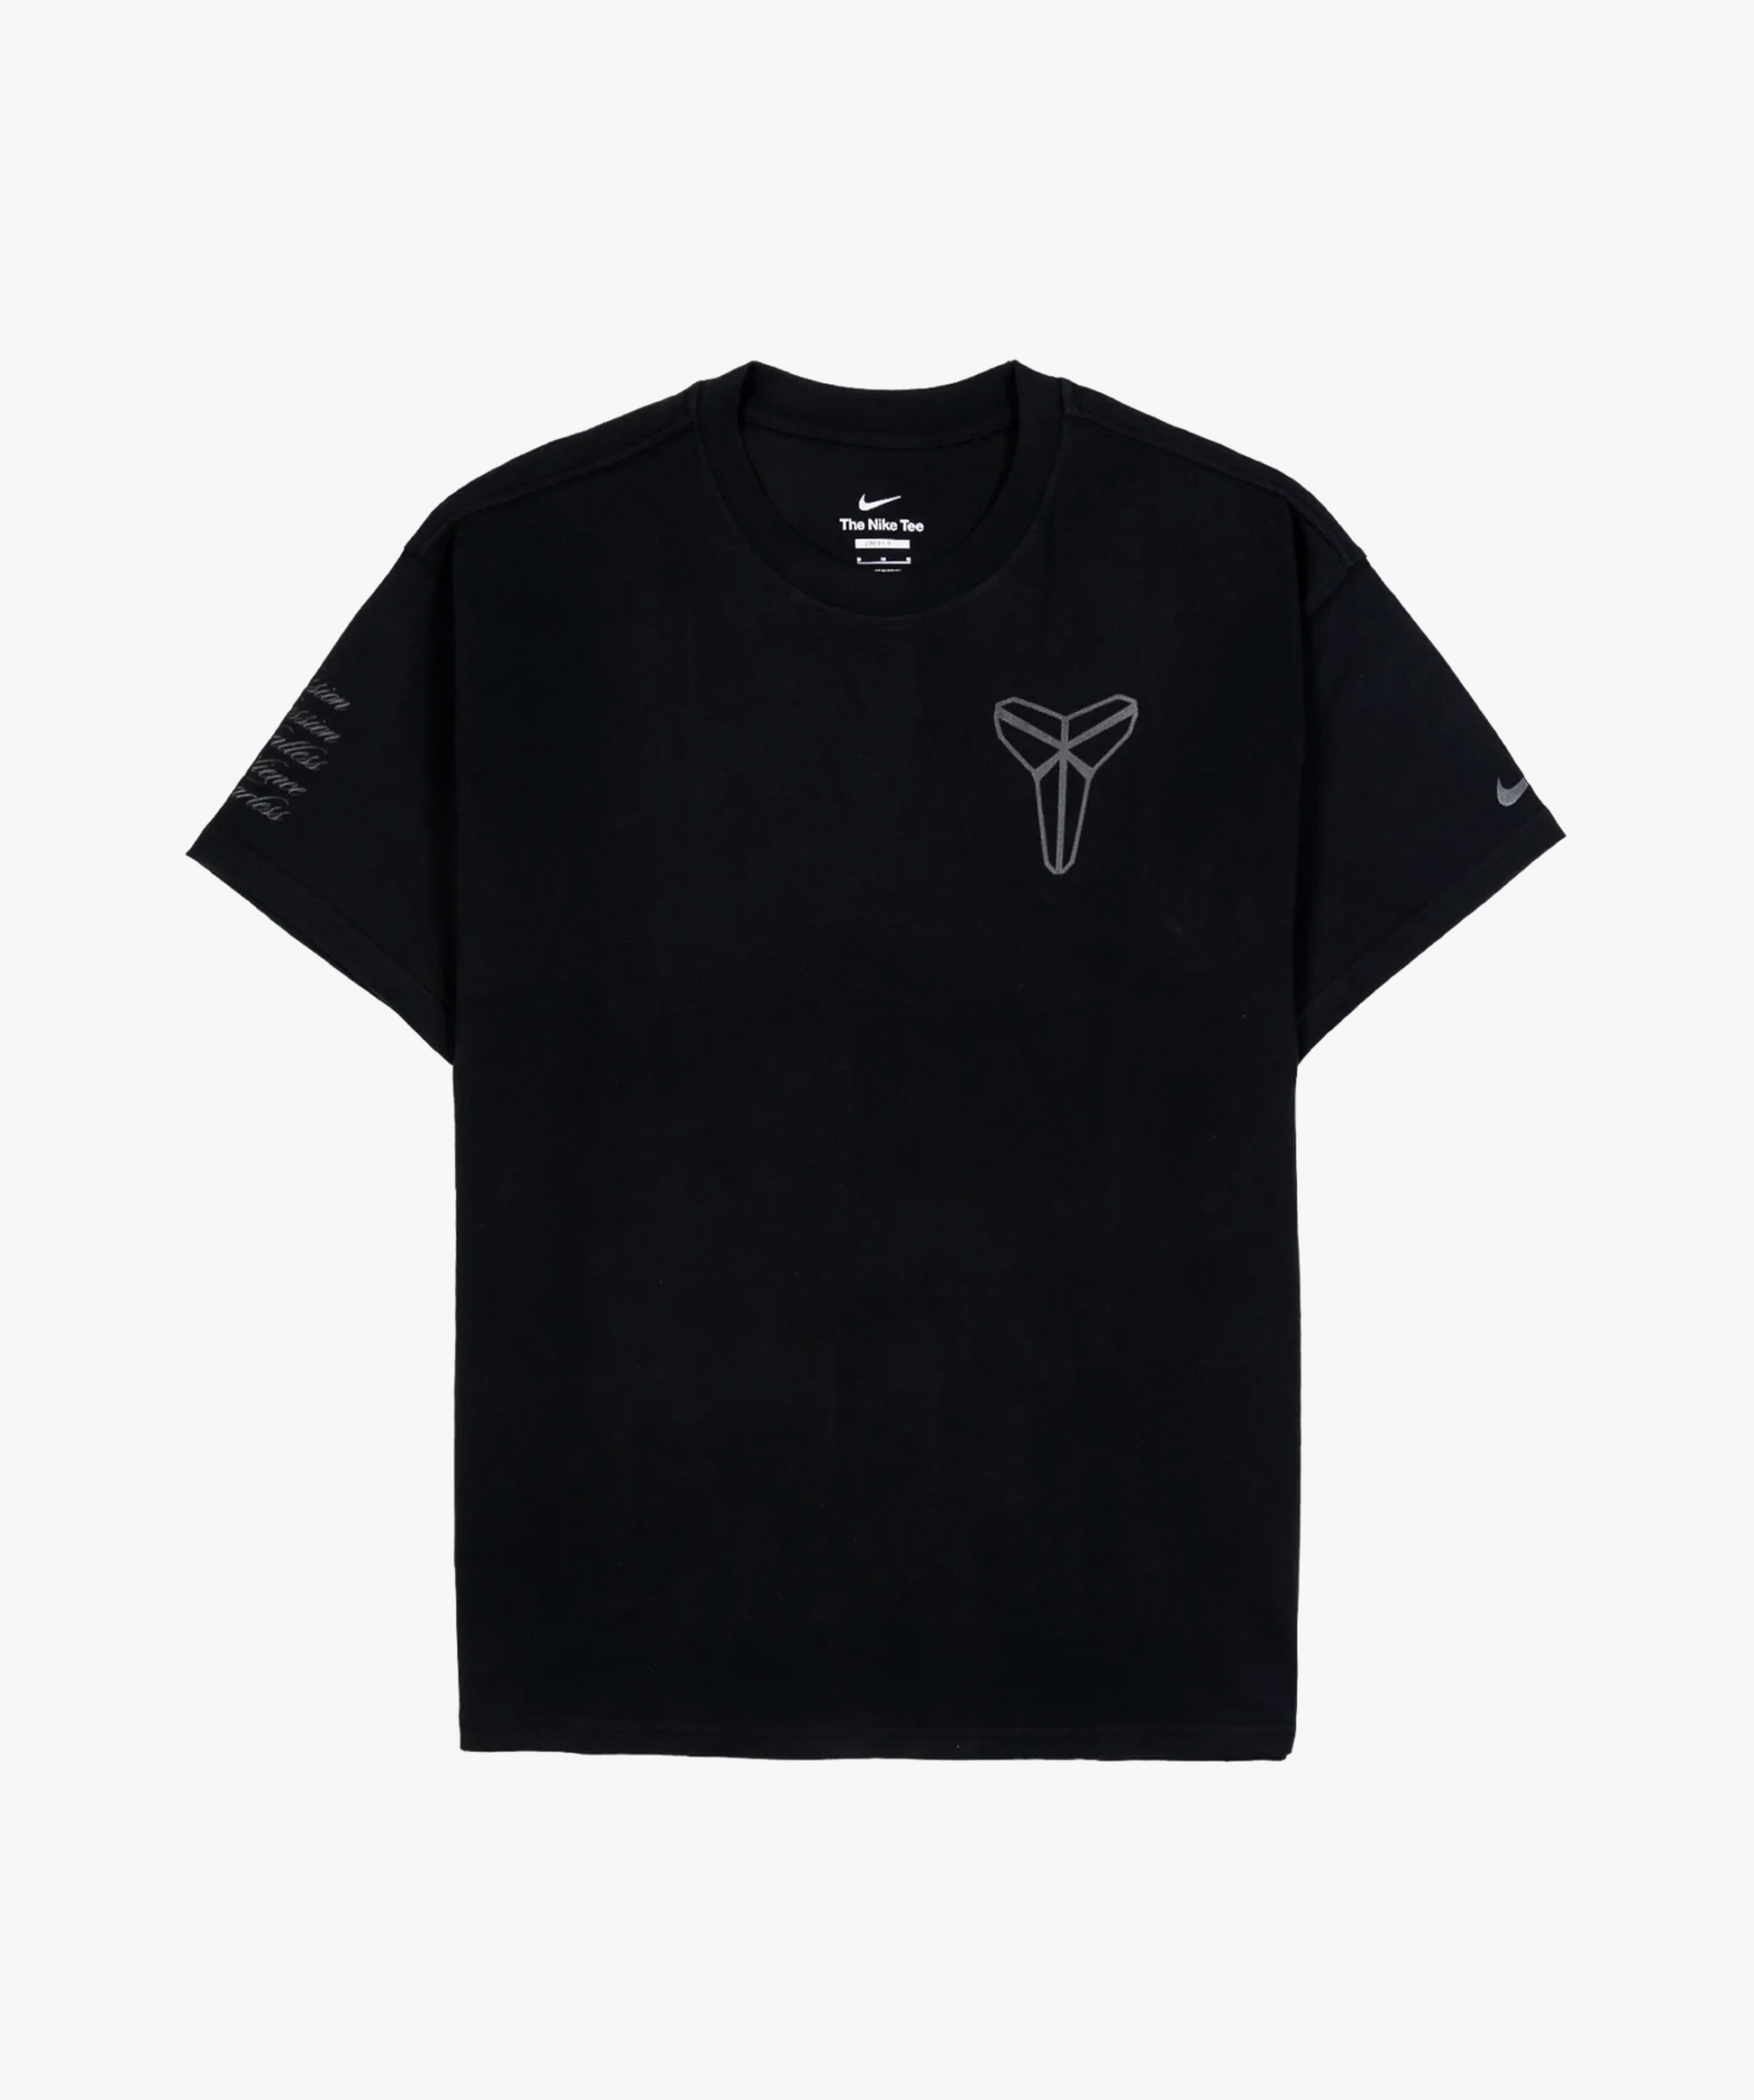 Nike Kobe Mamba Mentality T-Shirt 'Black' - Funky Insole